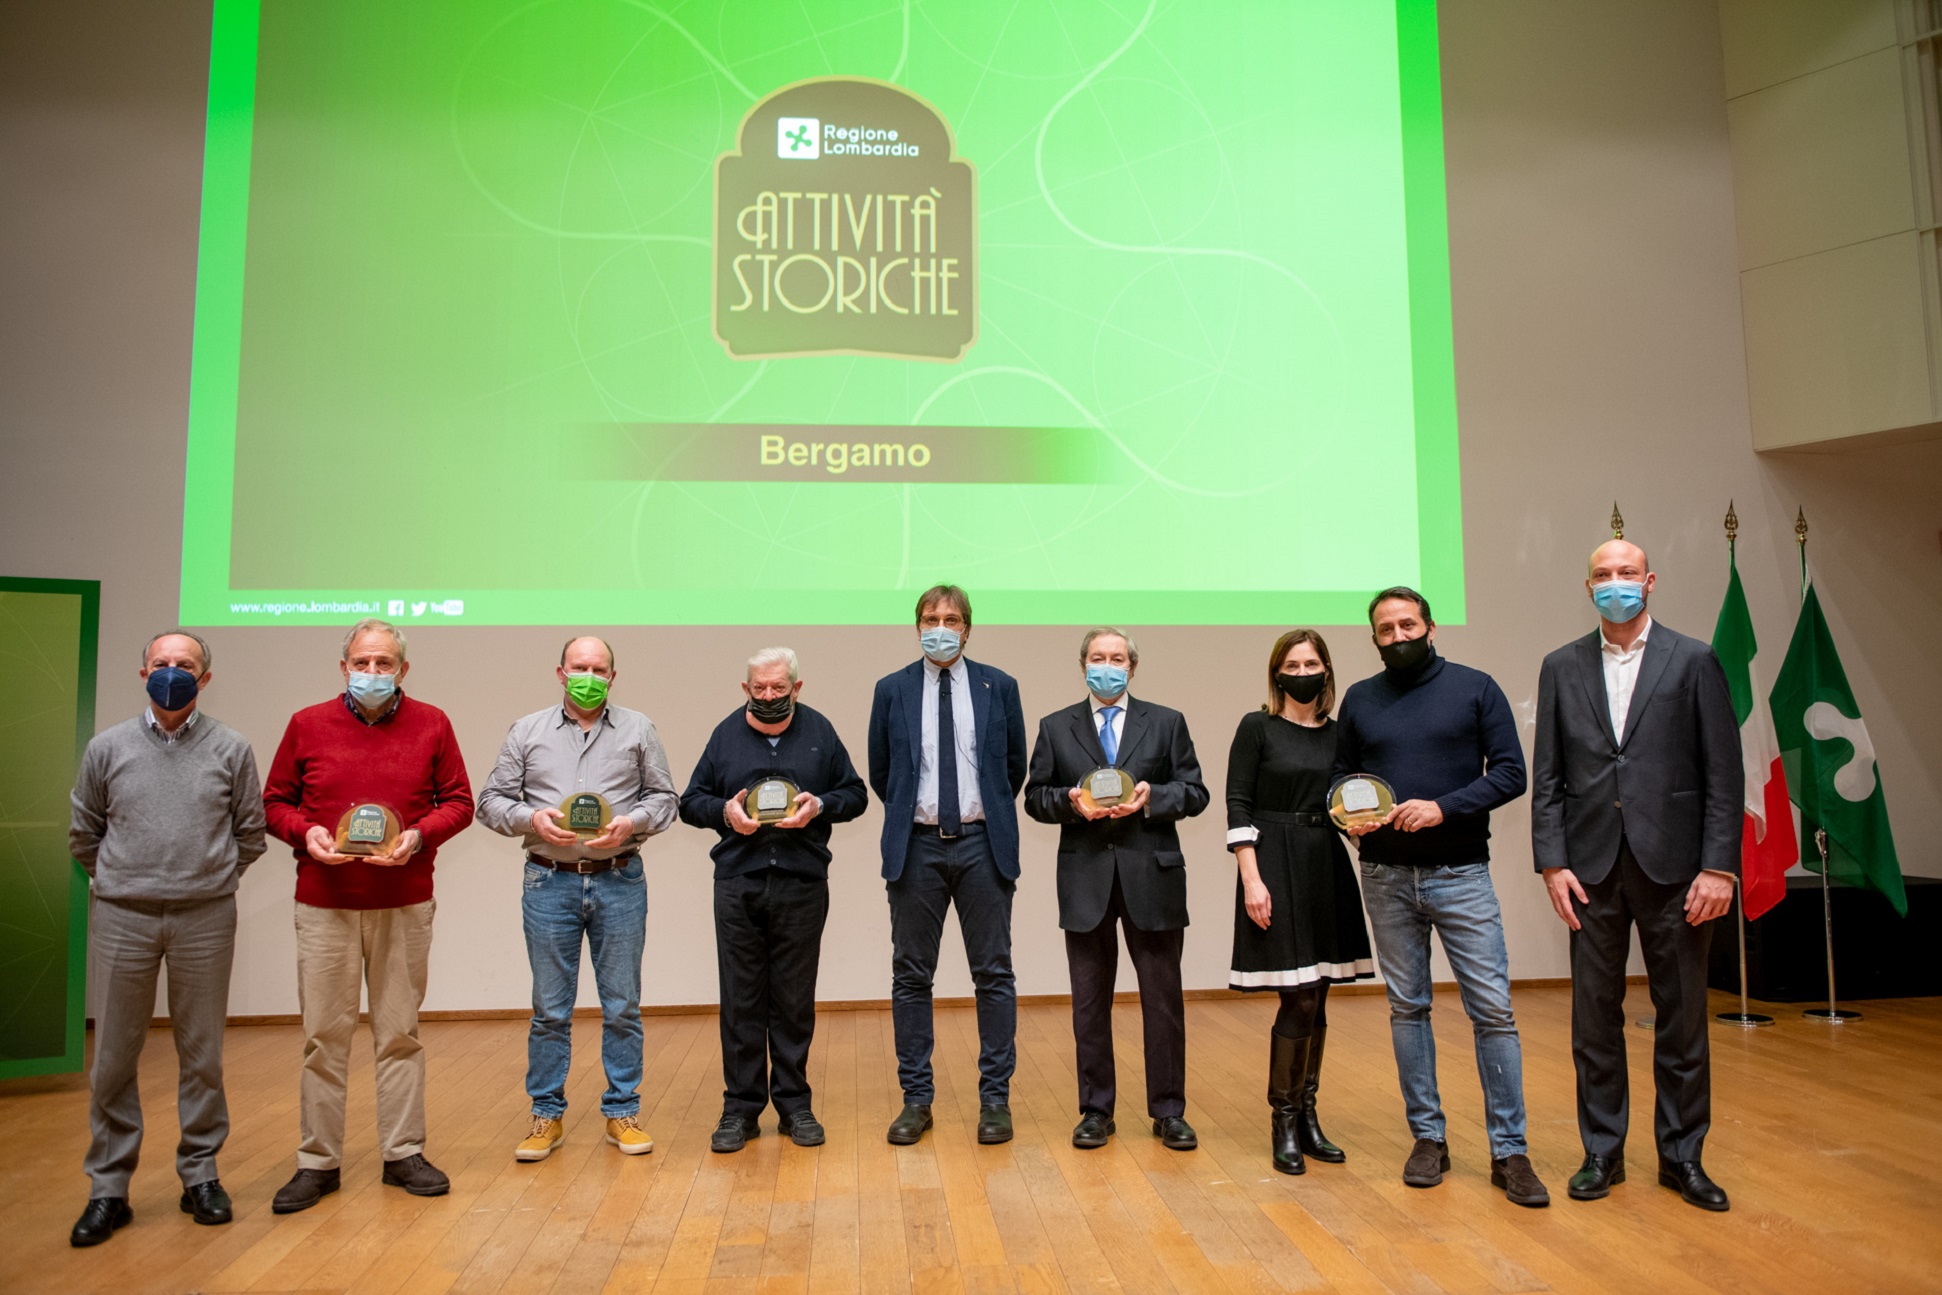 Premiazione attività storiche premiati Bergamo